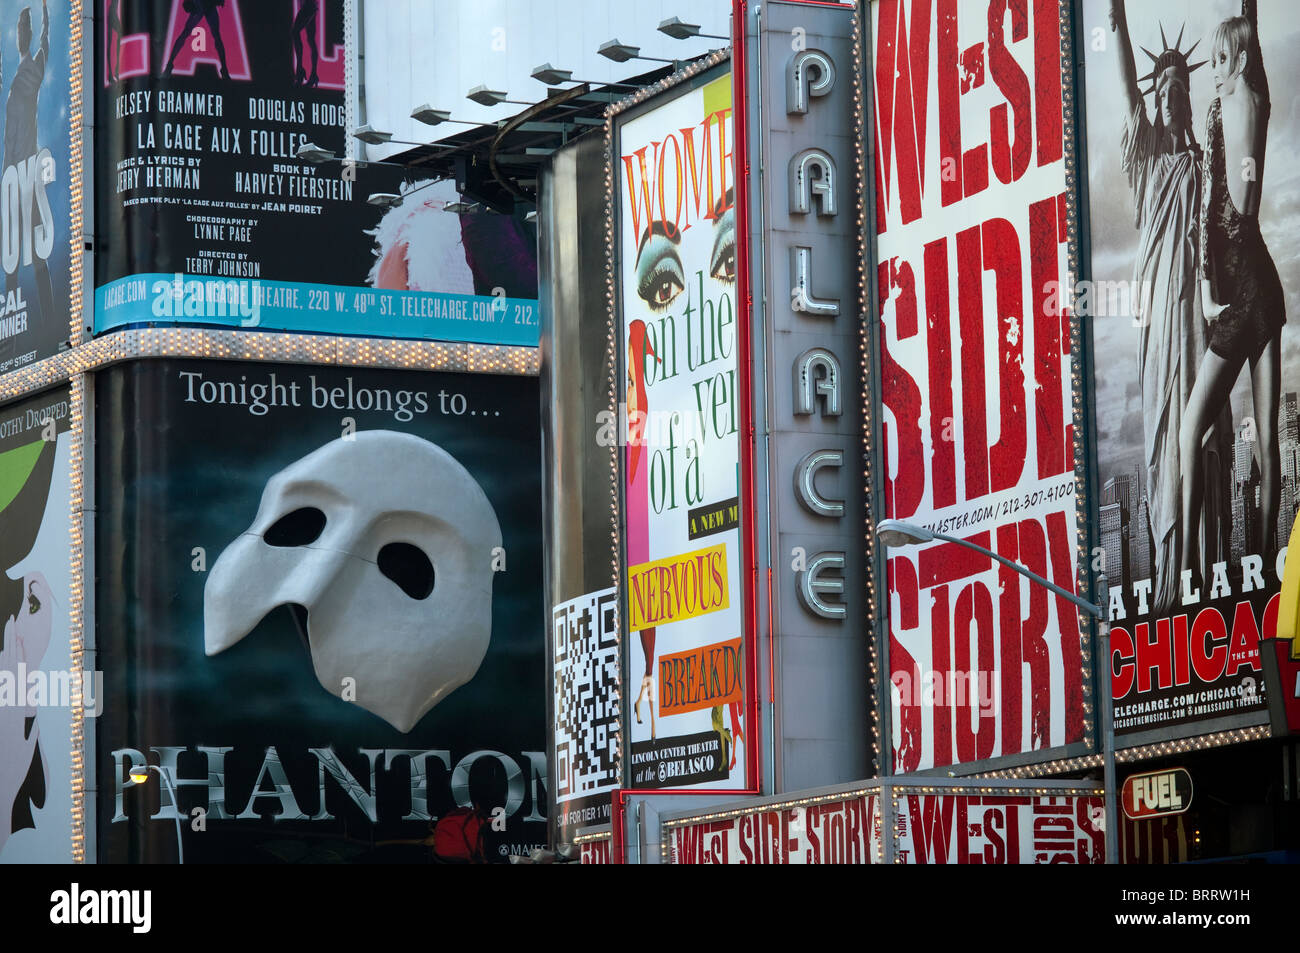 Des panneaux publicitaires pour des comédies musicales de Broadway sont vus dans Times Square à New York le mercredi, Octobre 6, 2010. (© Richard B. Levine) Banque D'Images